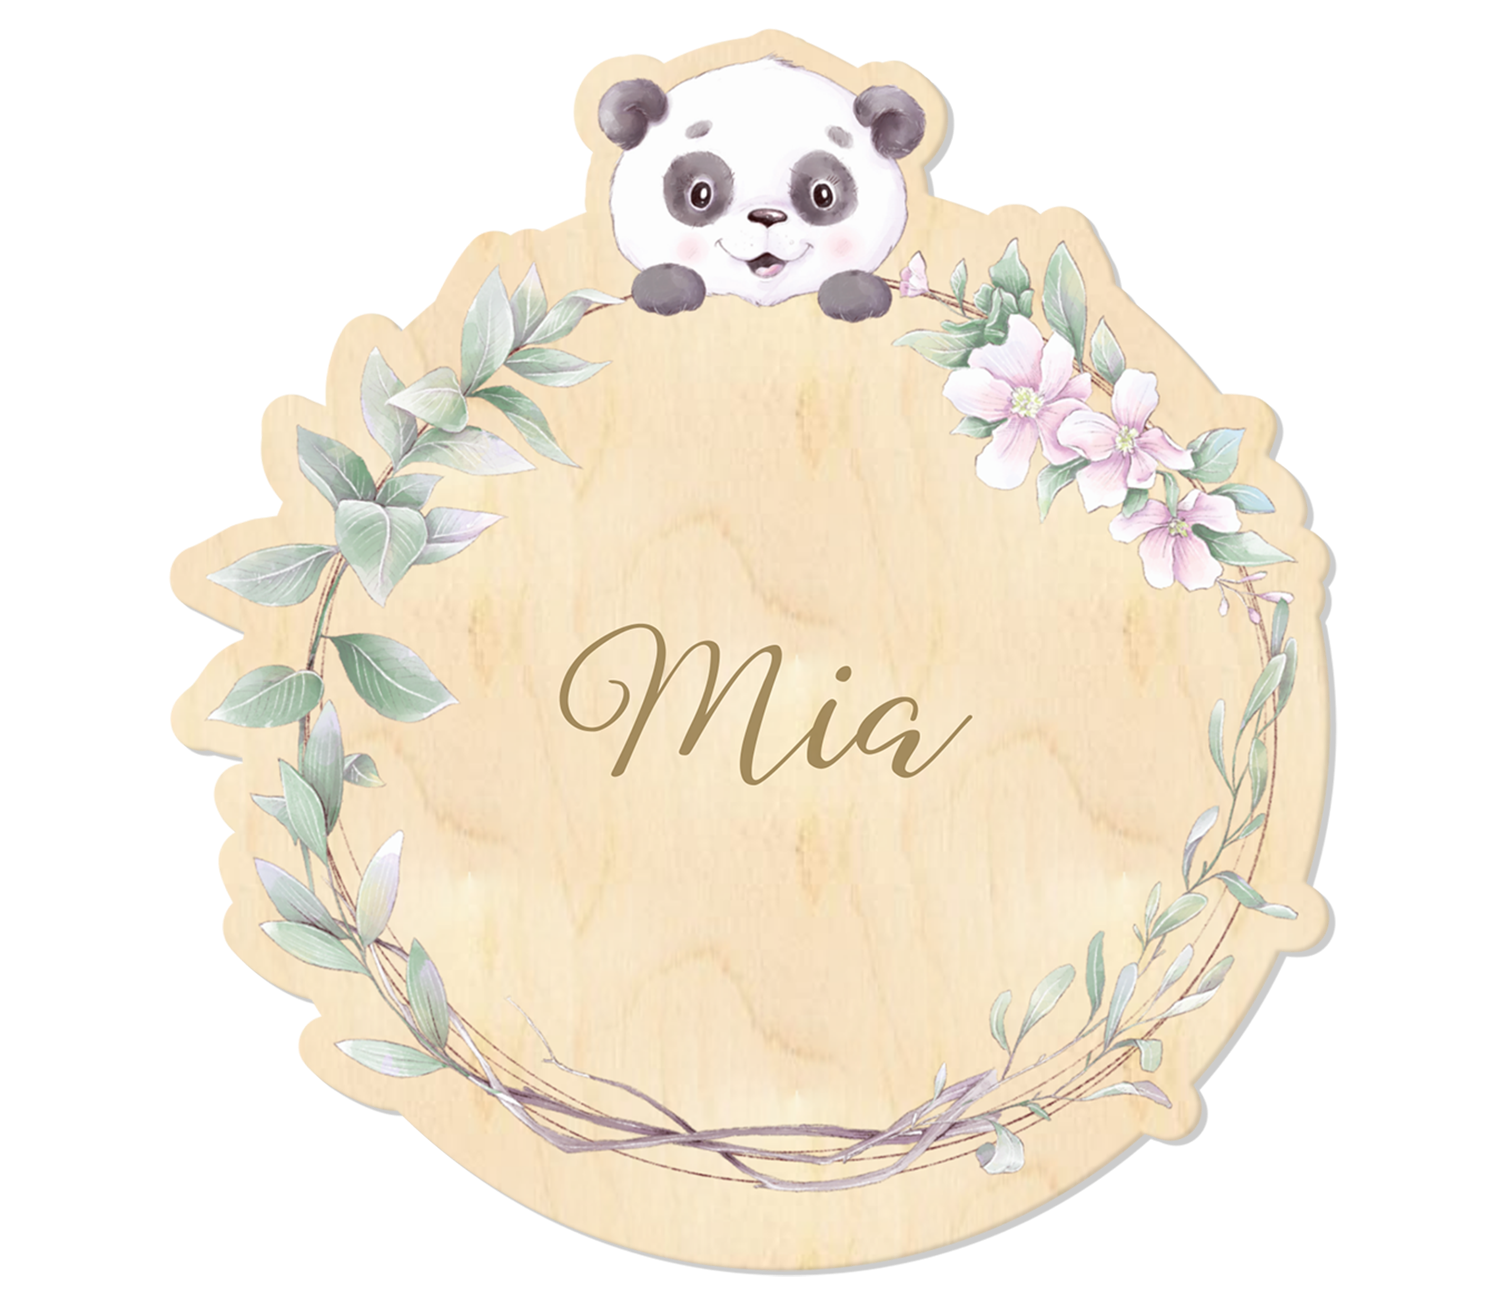 Auf das Holzschild sind Blumen und ein Panda aufgedruckt, der personalisierte Name ist eingraviert.